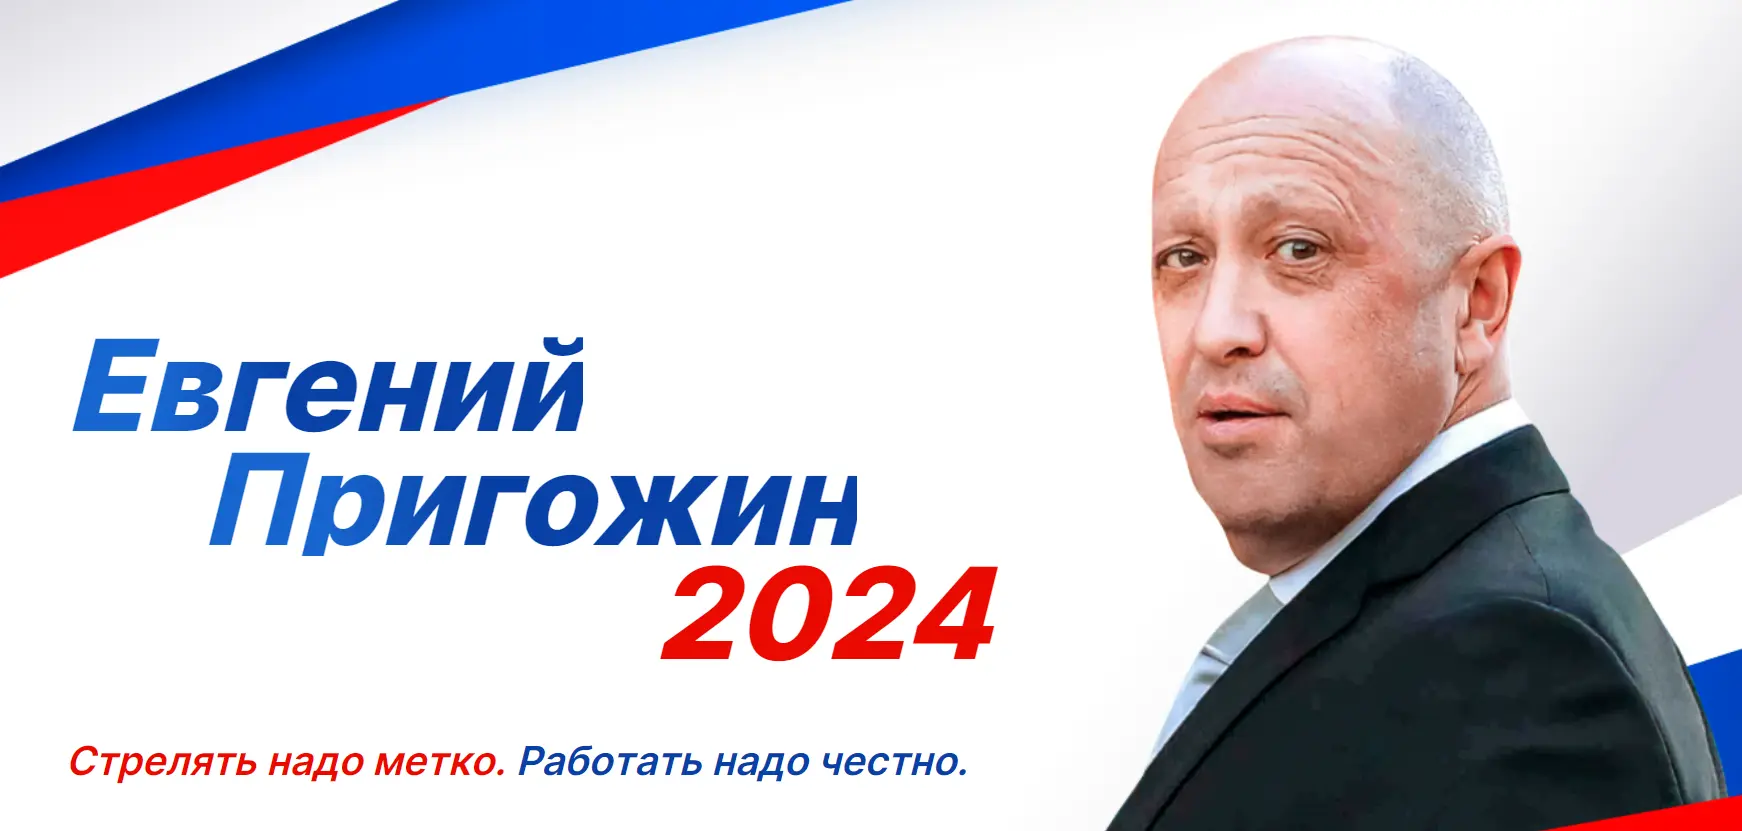 Какого числа пройдут выборы 2024 года. Пригожин 2024 выборы плакат. Vibori rossii 2024. Предвыборные плакаты 2024.